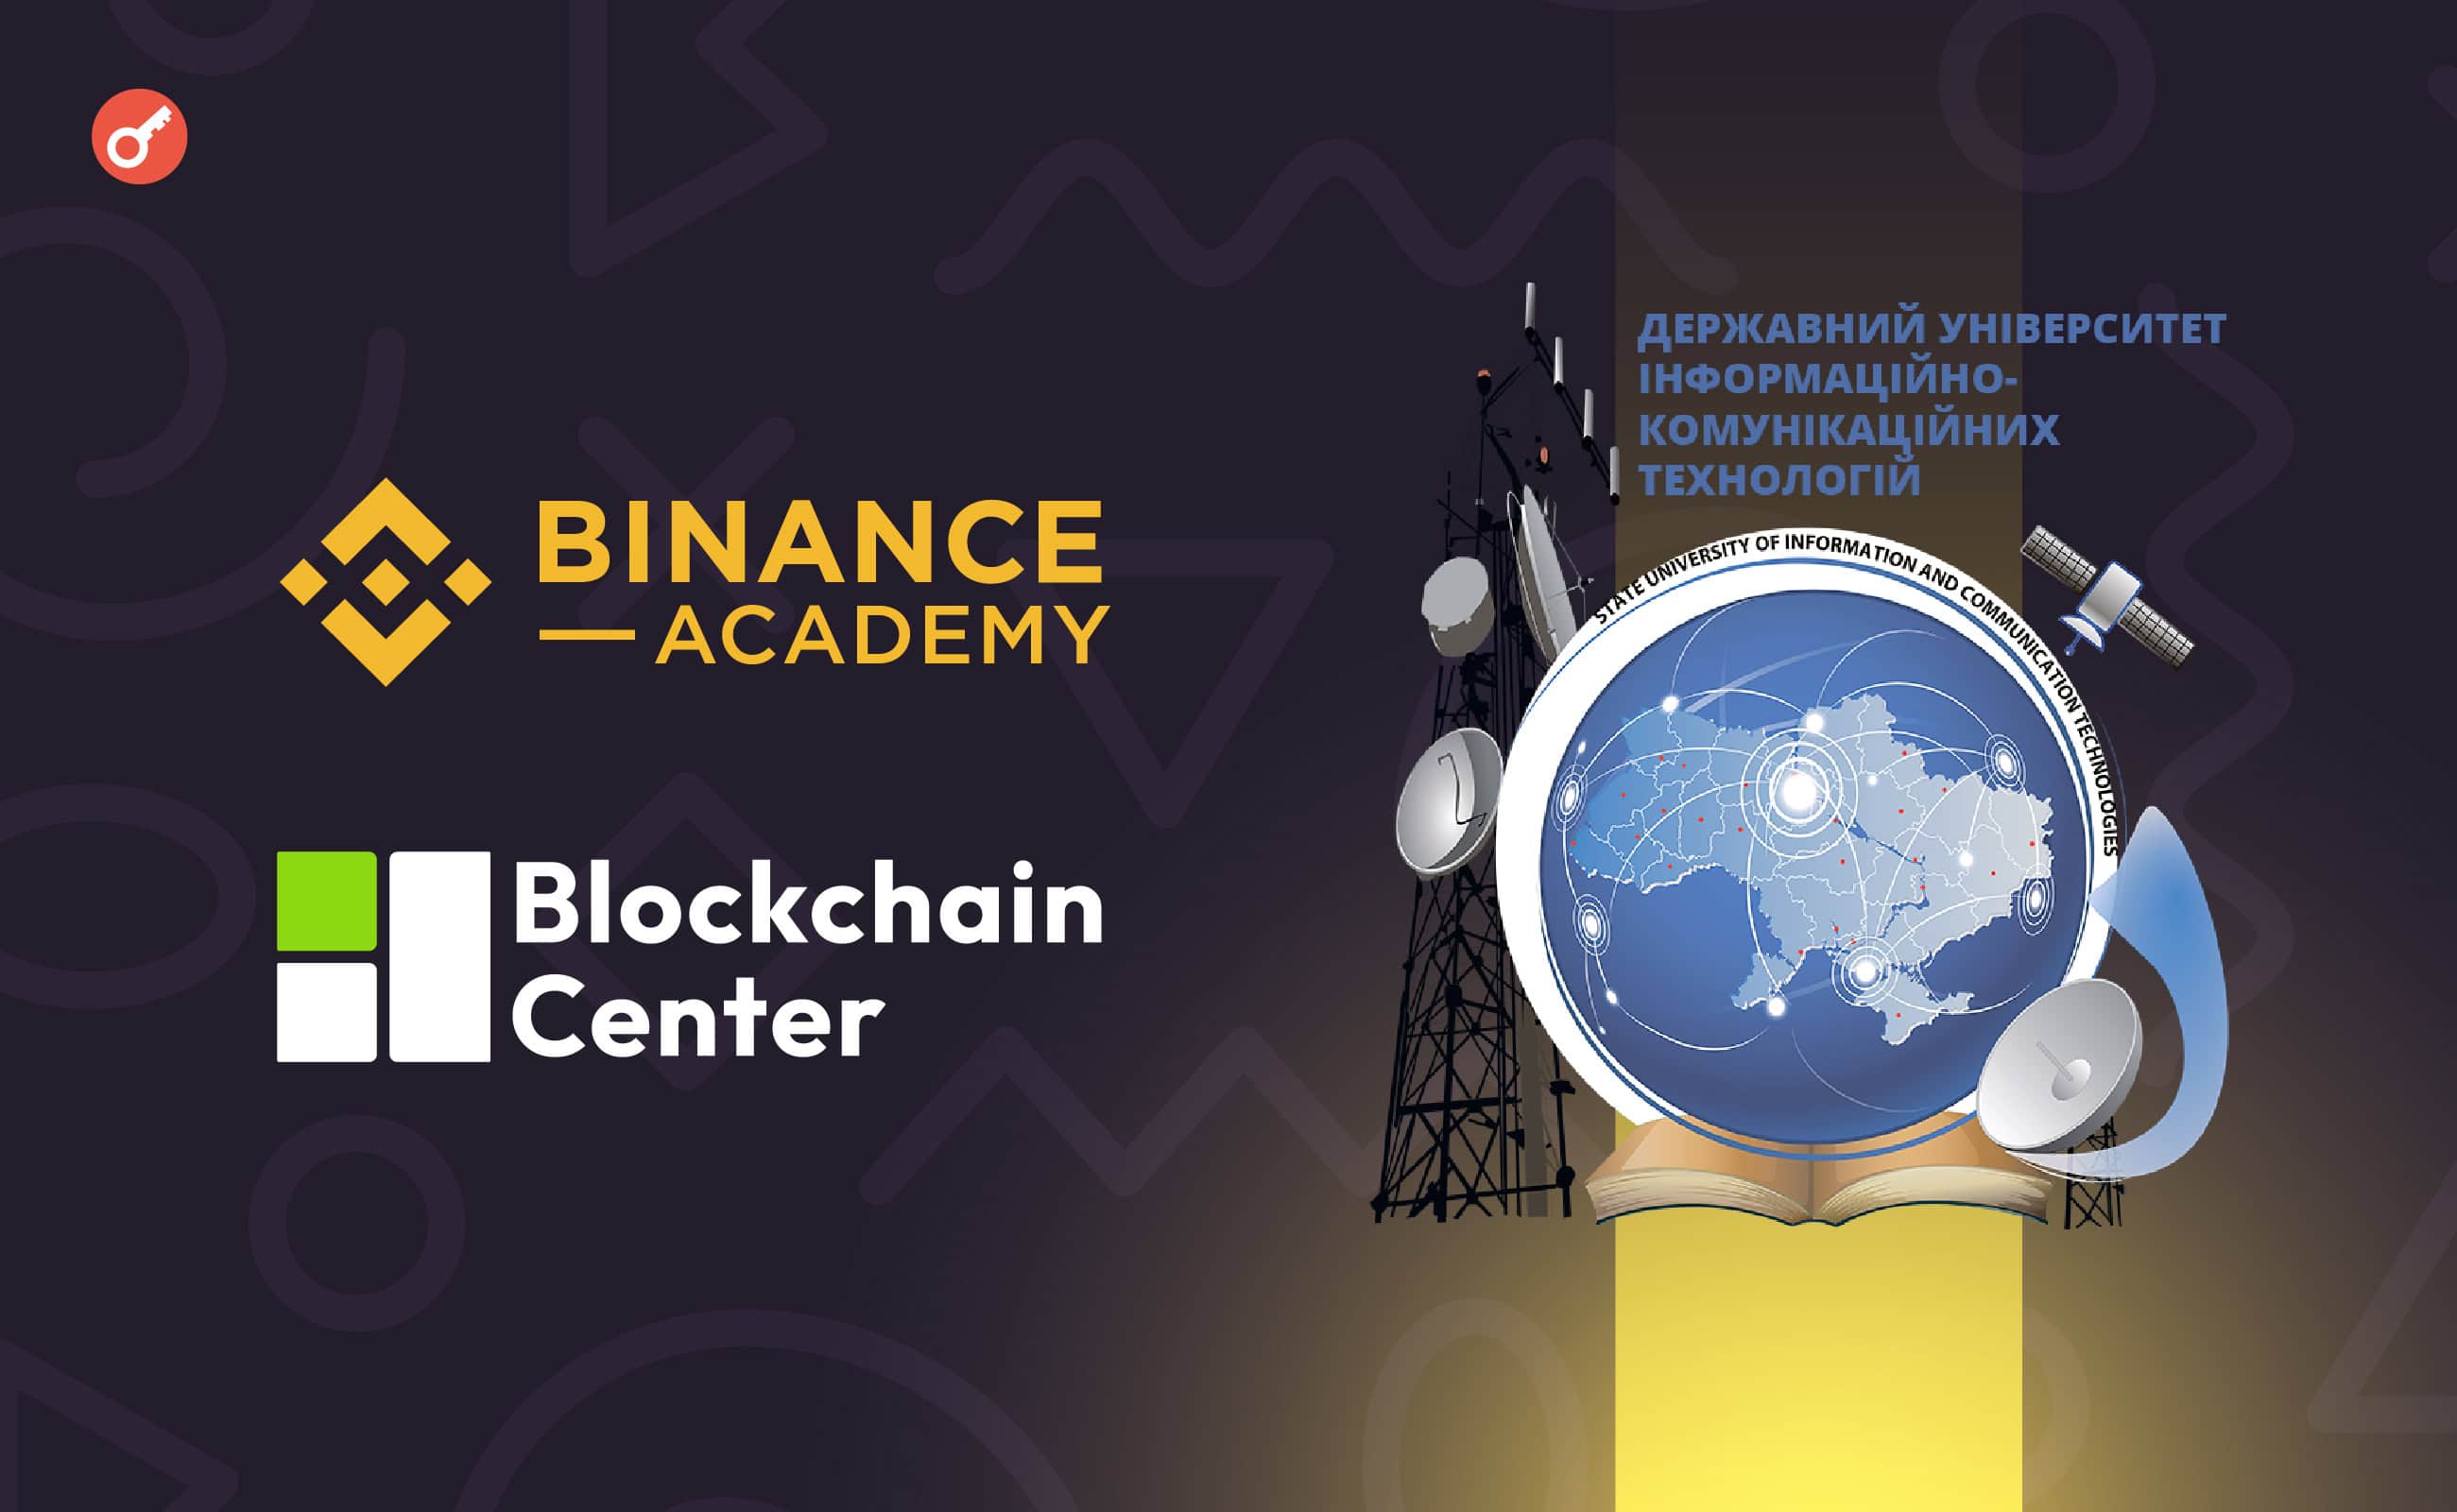 Binance Academy будет сотрудничать с Государственным университетом информационно-коммуникационных технологий Украины. Заглавный коллаж новости.